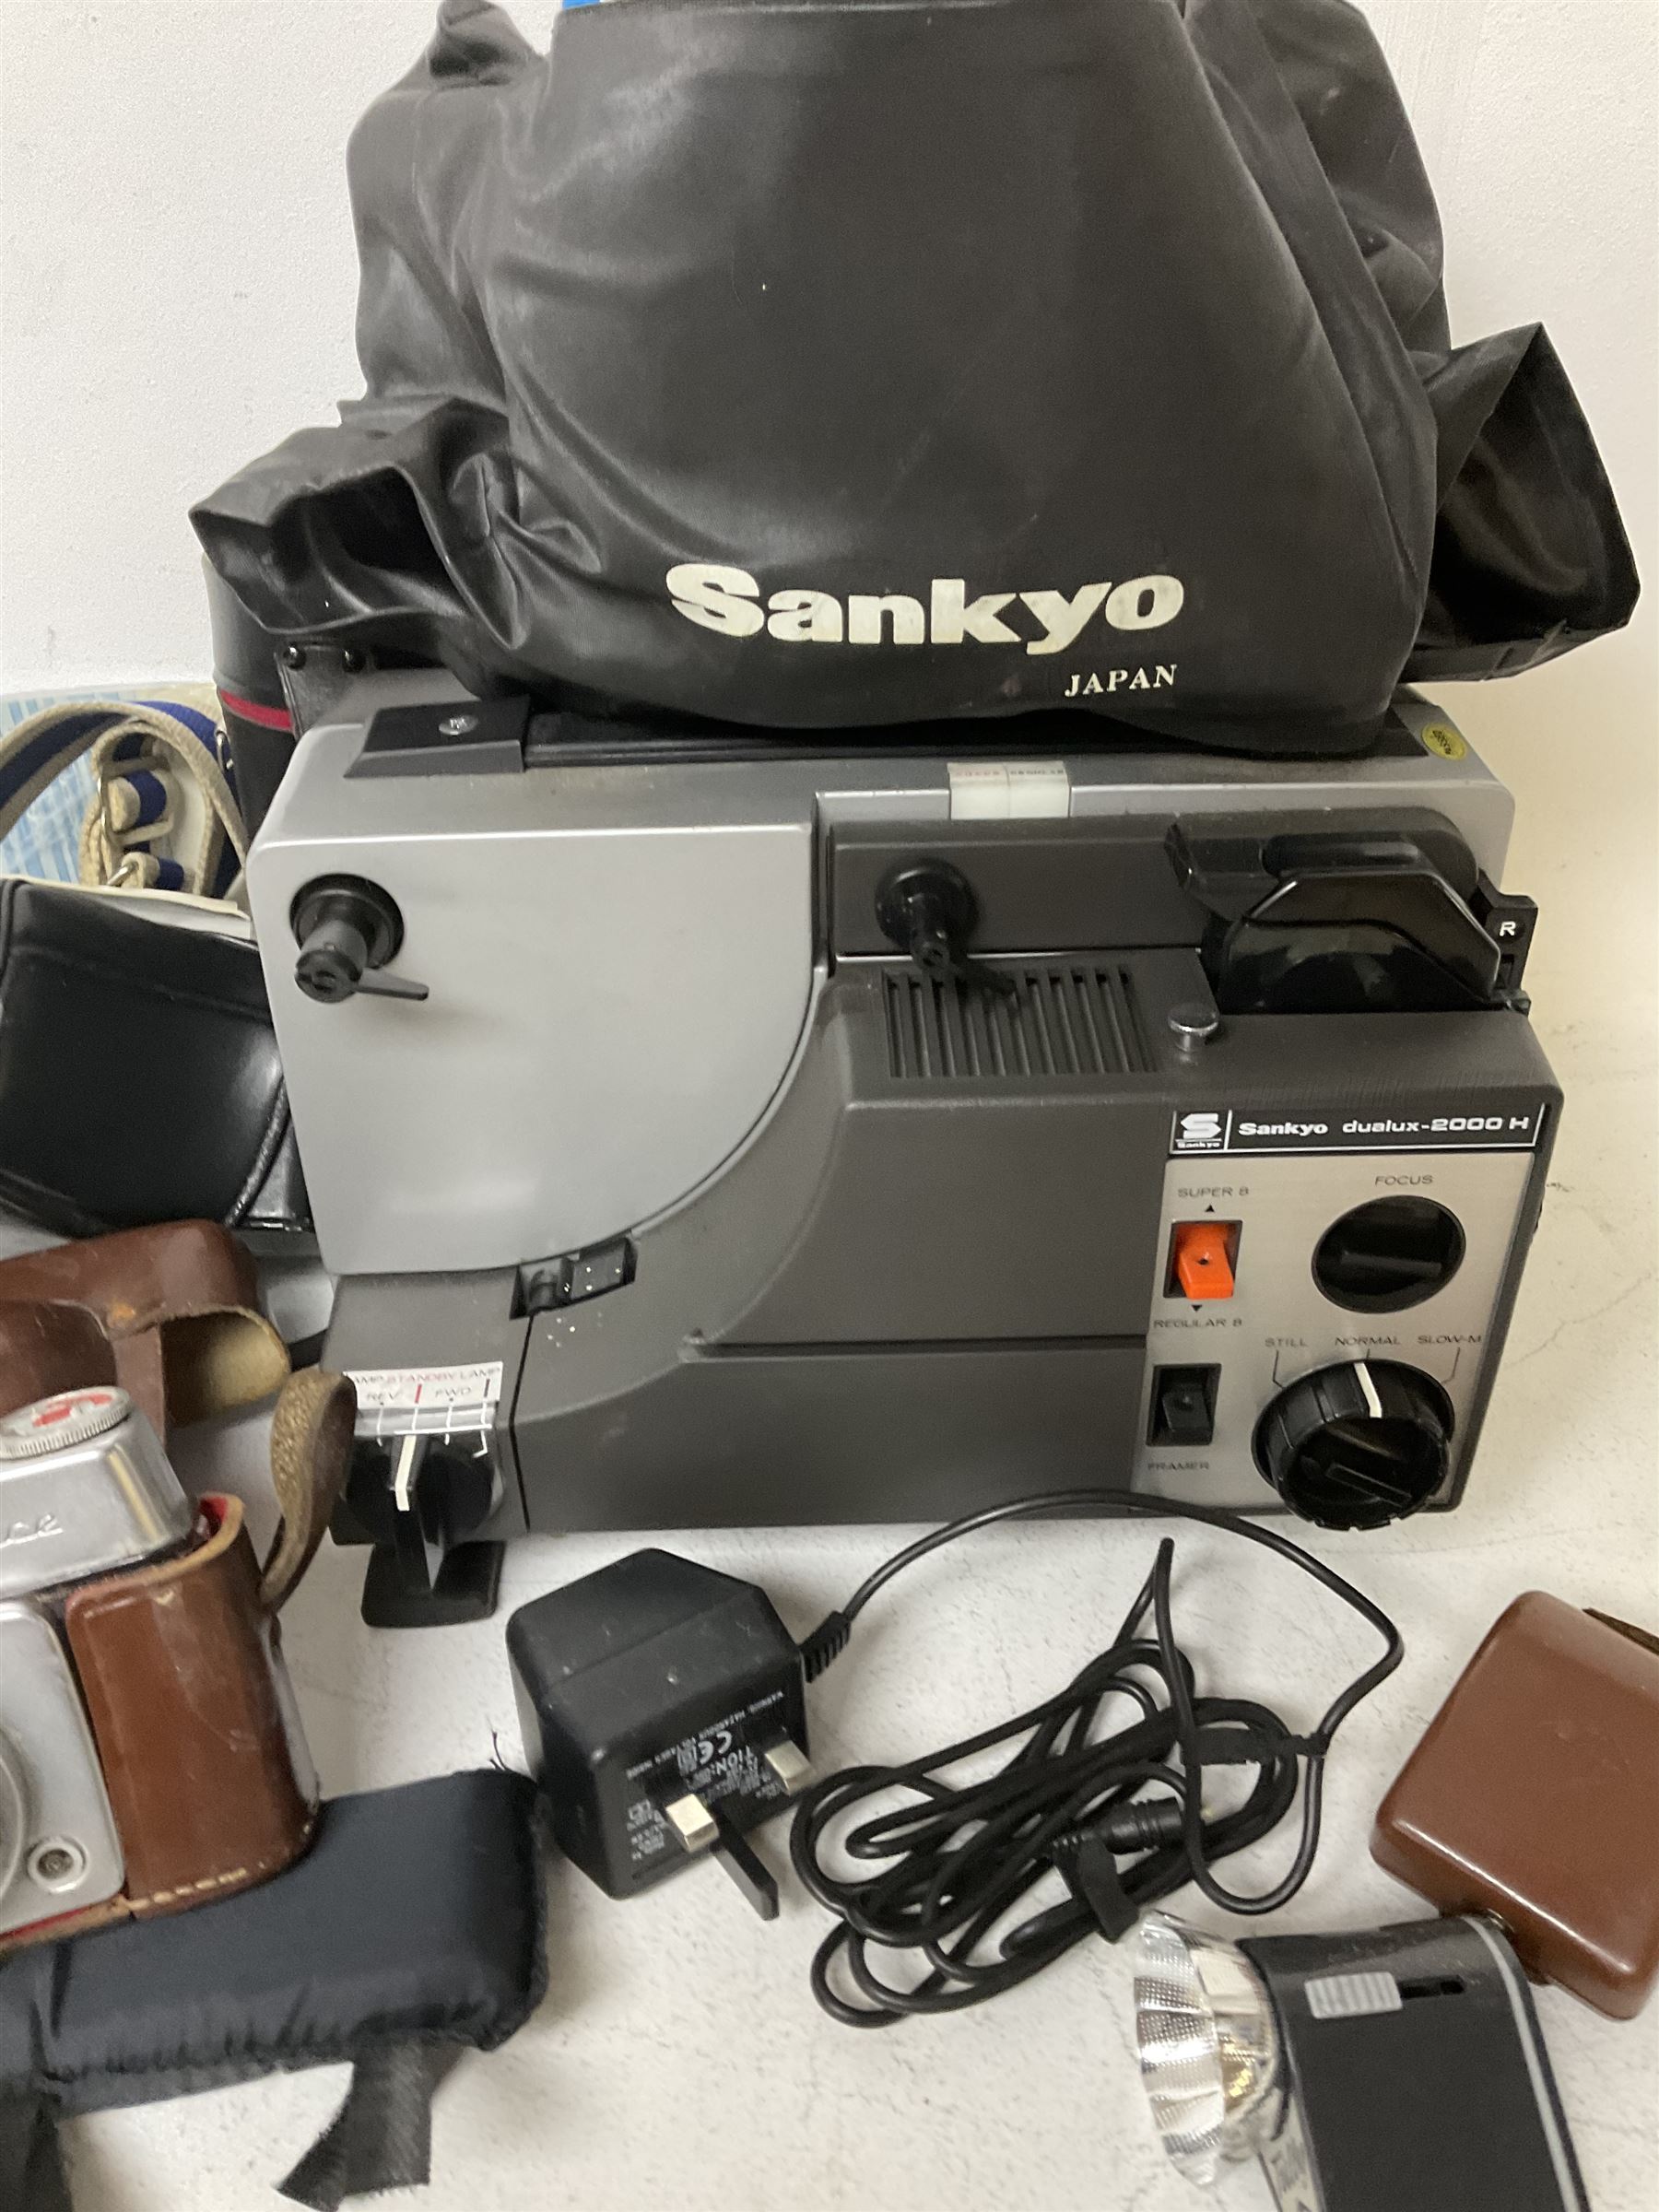 Sankyo Dualux-2000H projector - Image 3 of 4